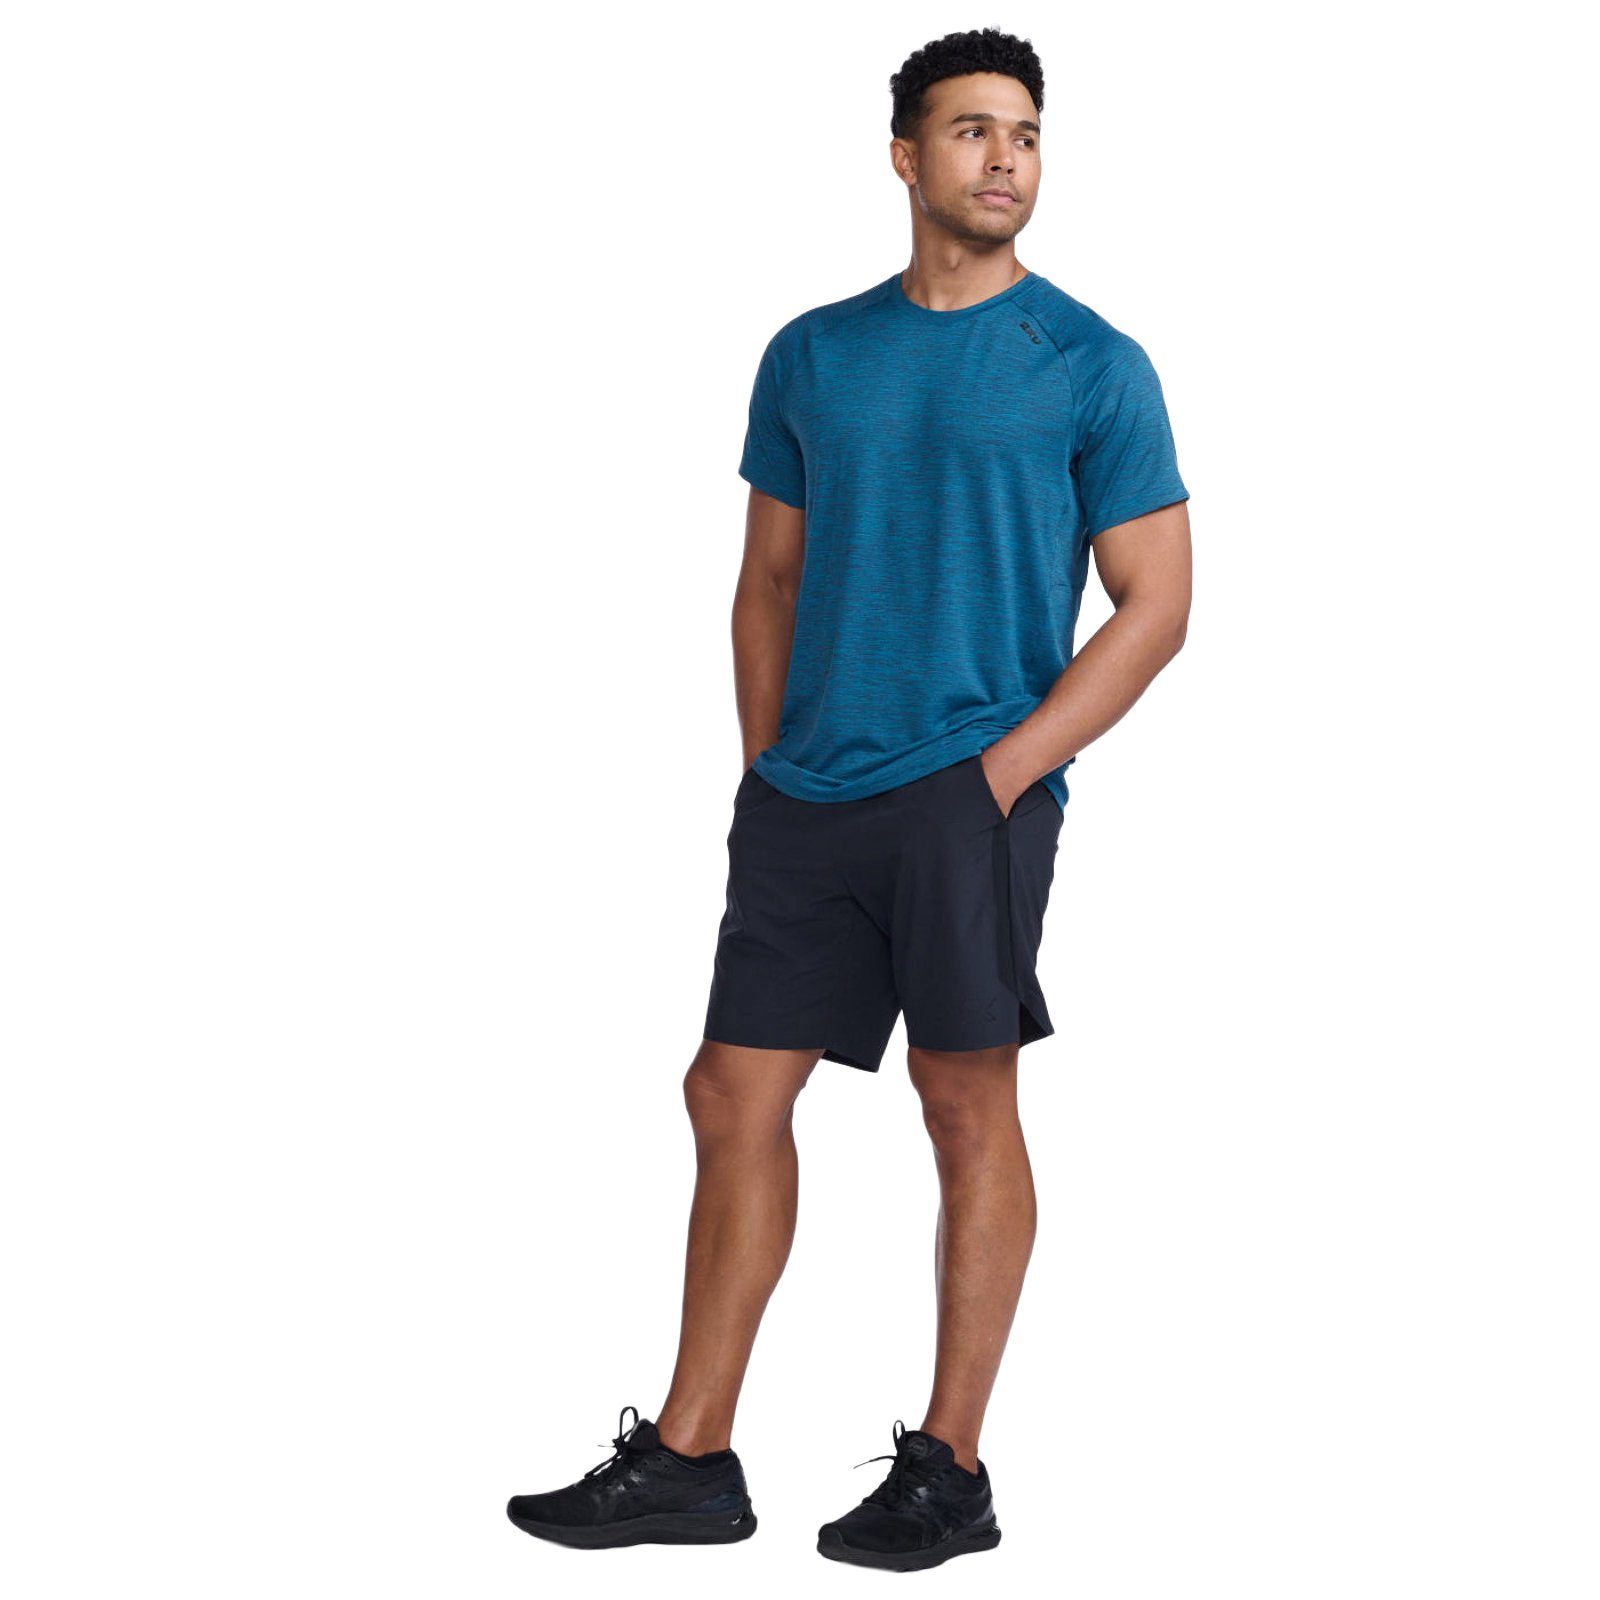 Bewegungsfreiheit 2xU Tee Trainingsshirt Celestial/Black strapazierfähiges Material Motion Laufshirt und